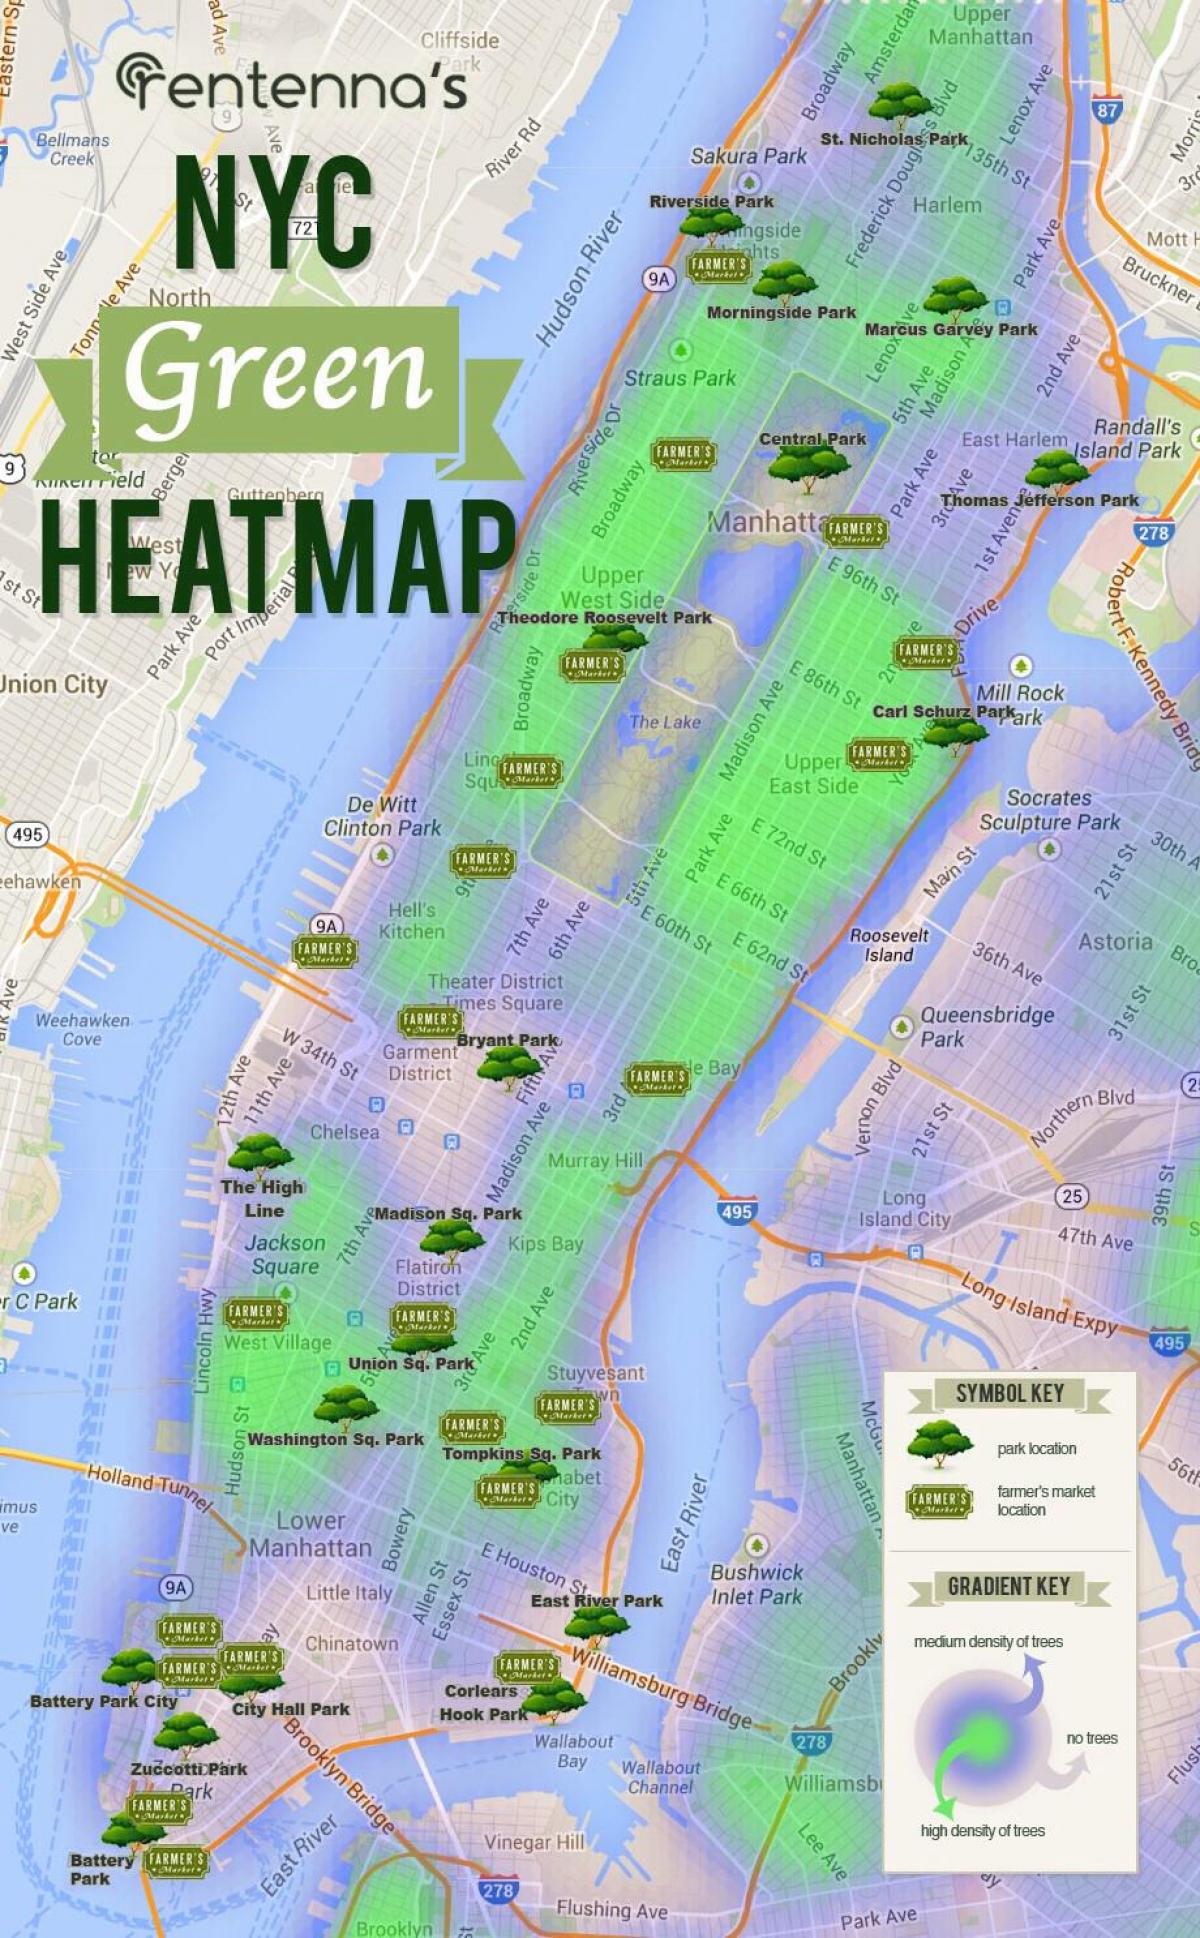 térkép a Manhattani park